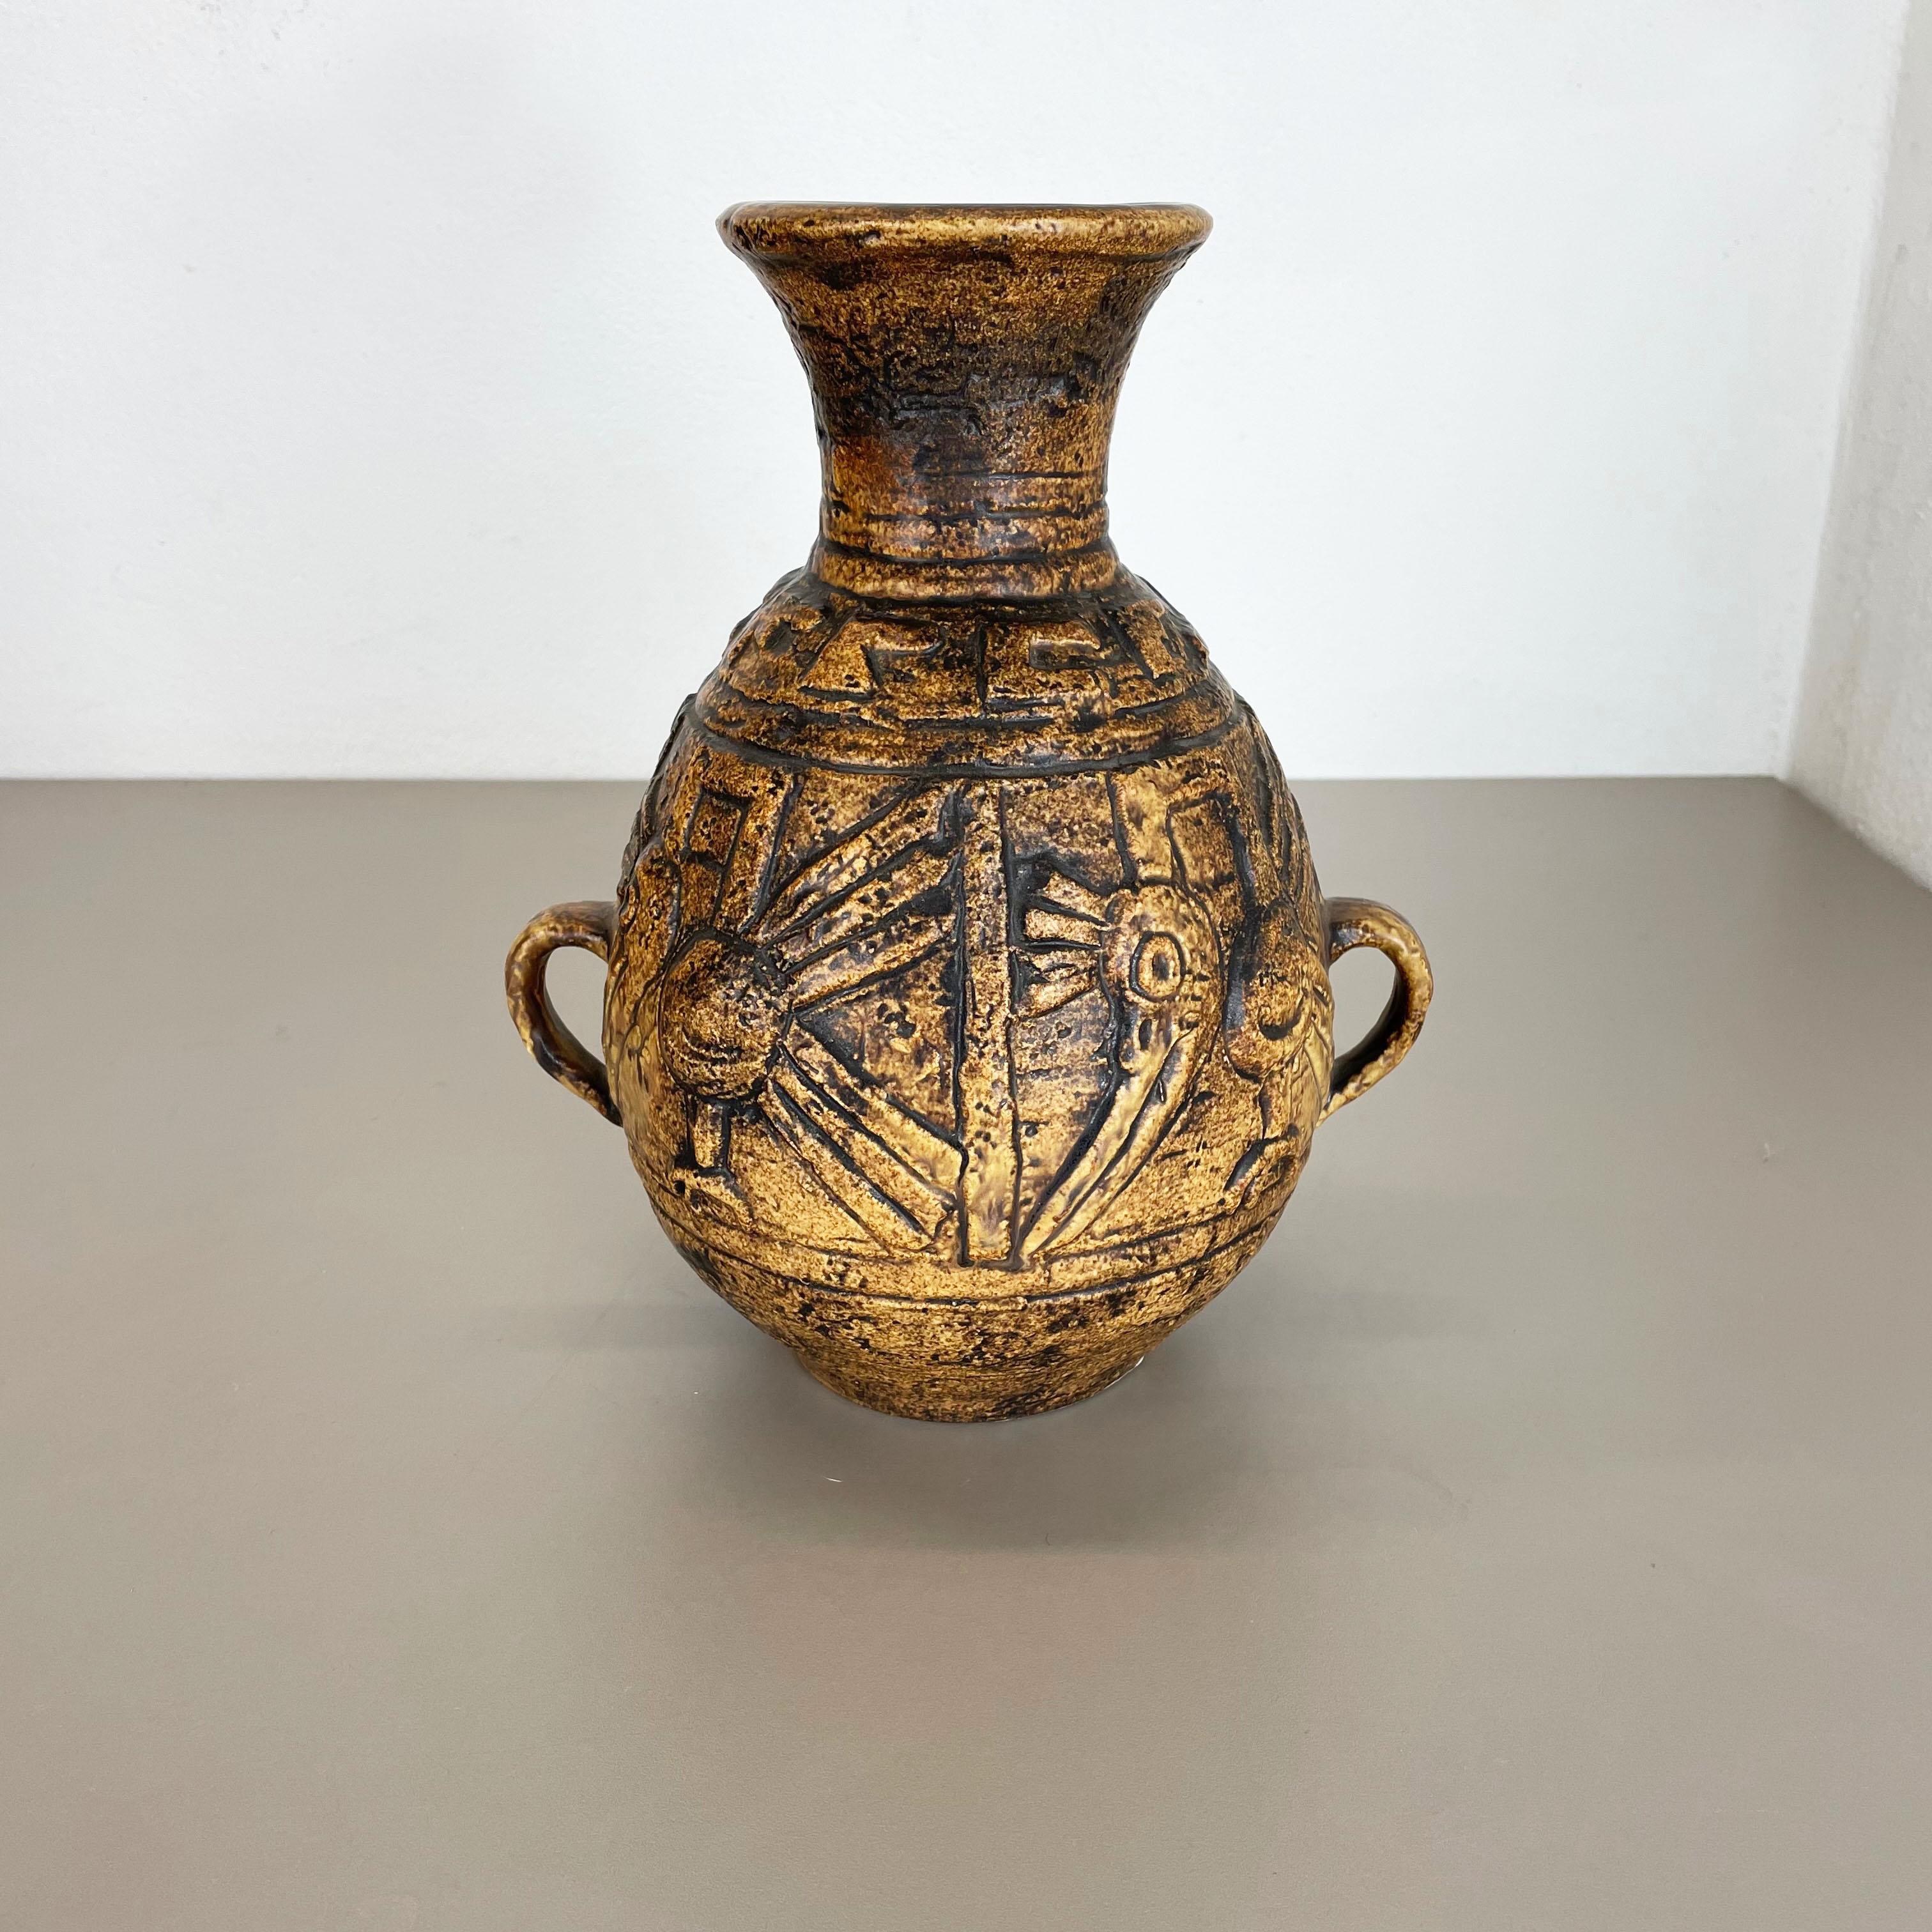 Article :

Vase en céramique


Producteur :

Jasba Ceramic, Allemagne



Décennie :

1970s




Vase original en céramique des années 1970, fabriqué en Allemagne. Production allemande de haute qualité avec une belle structure